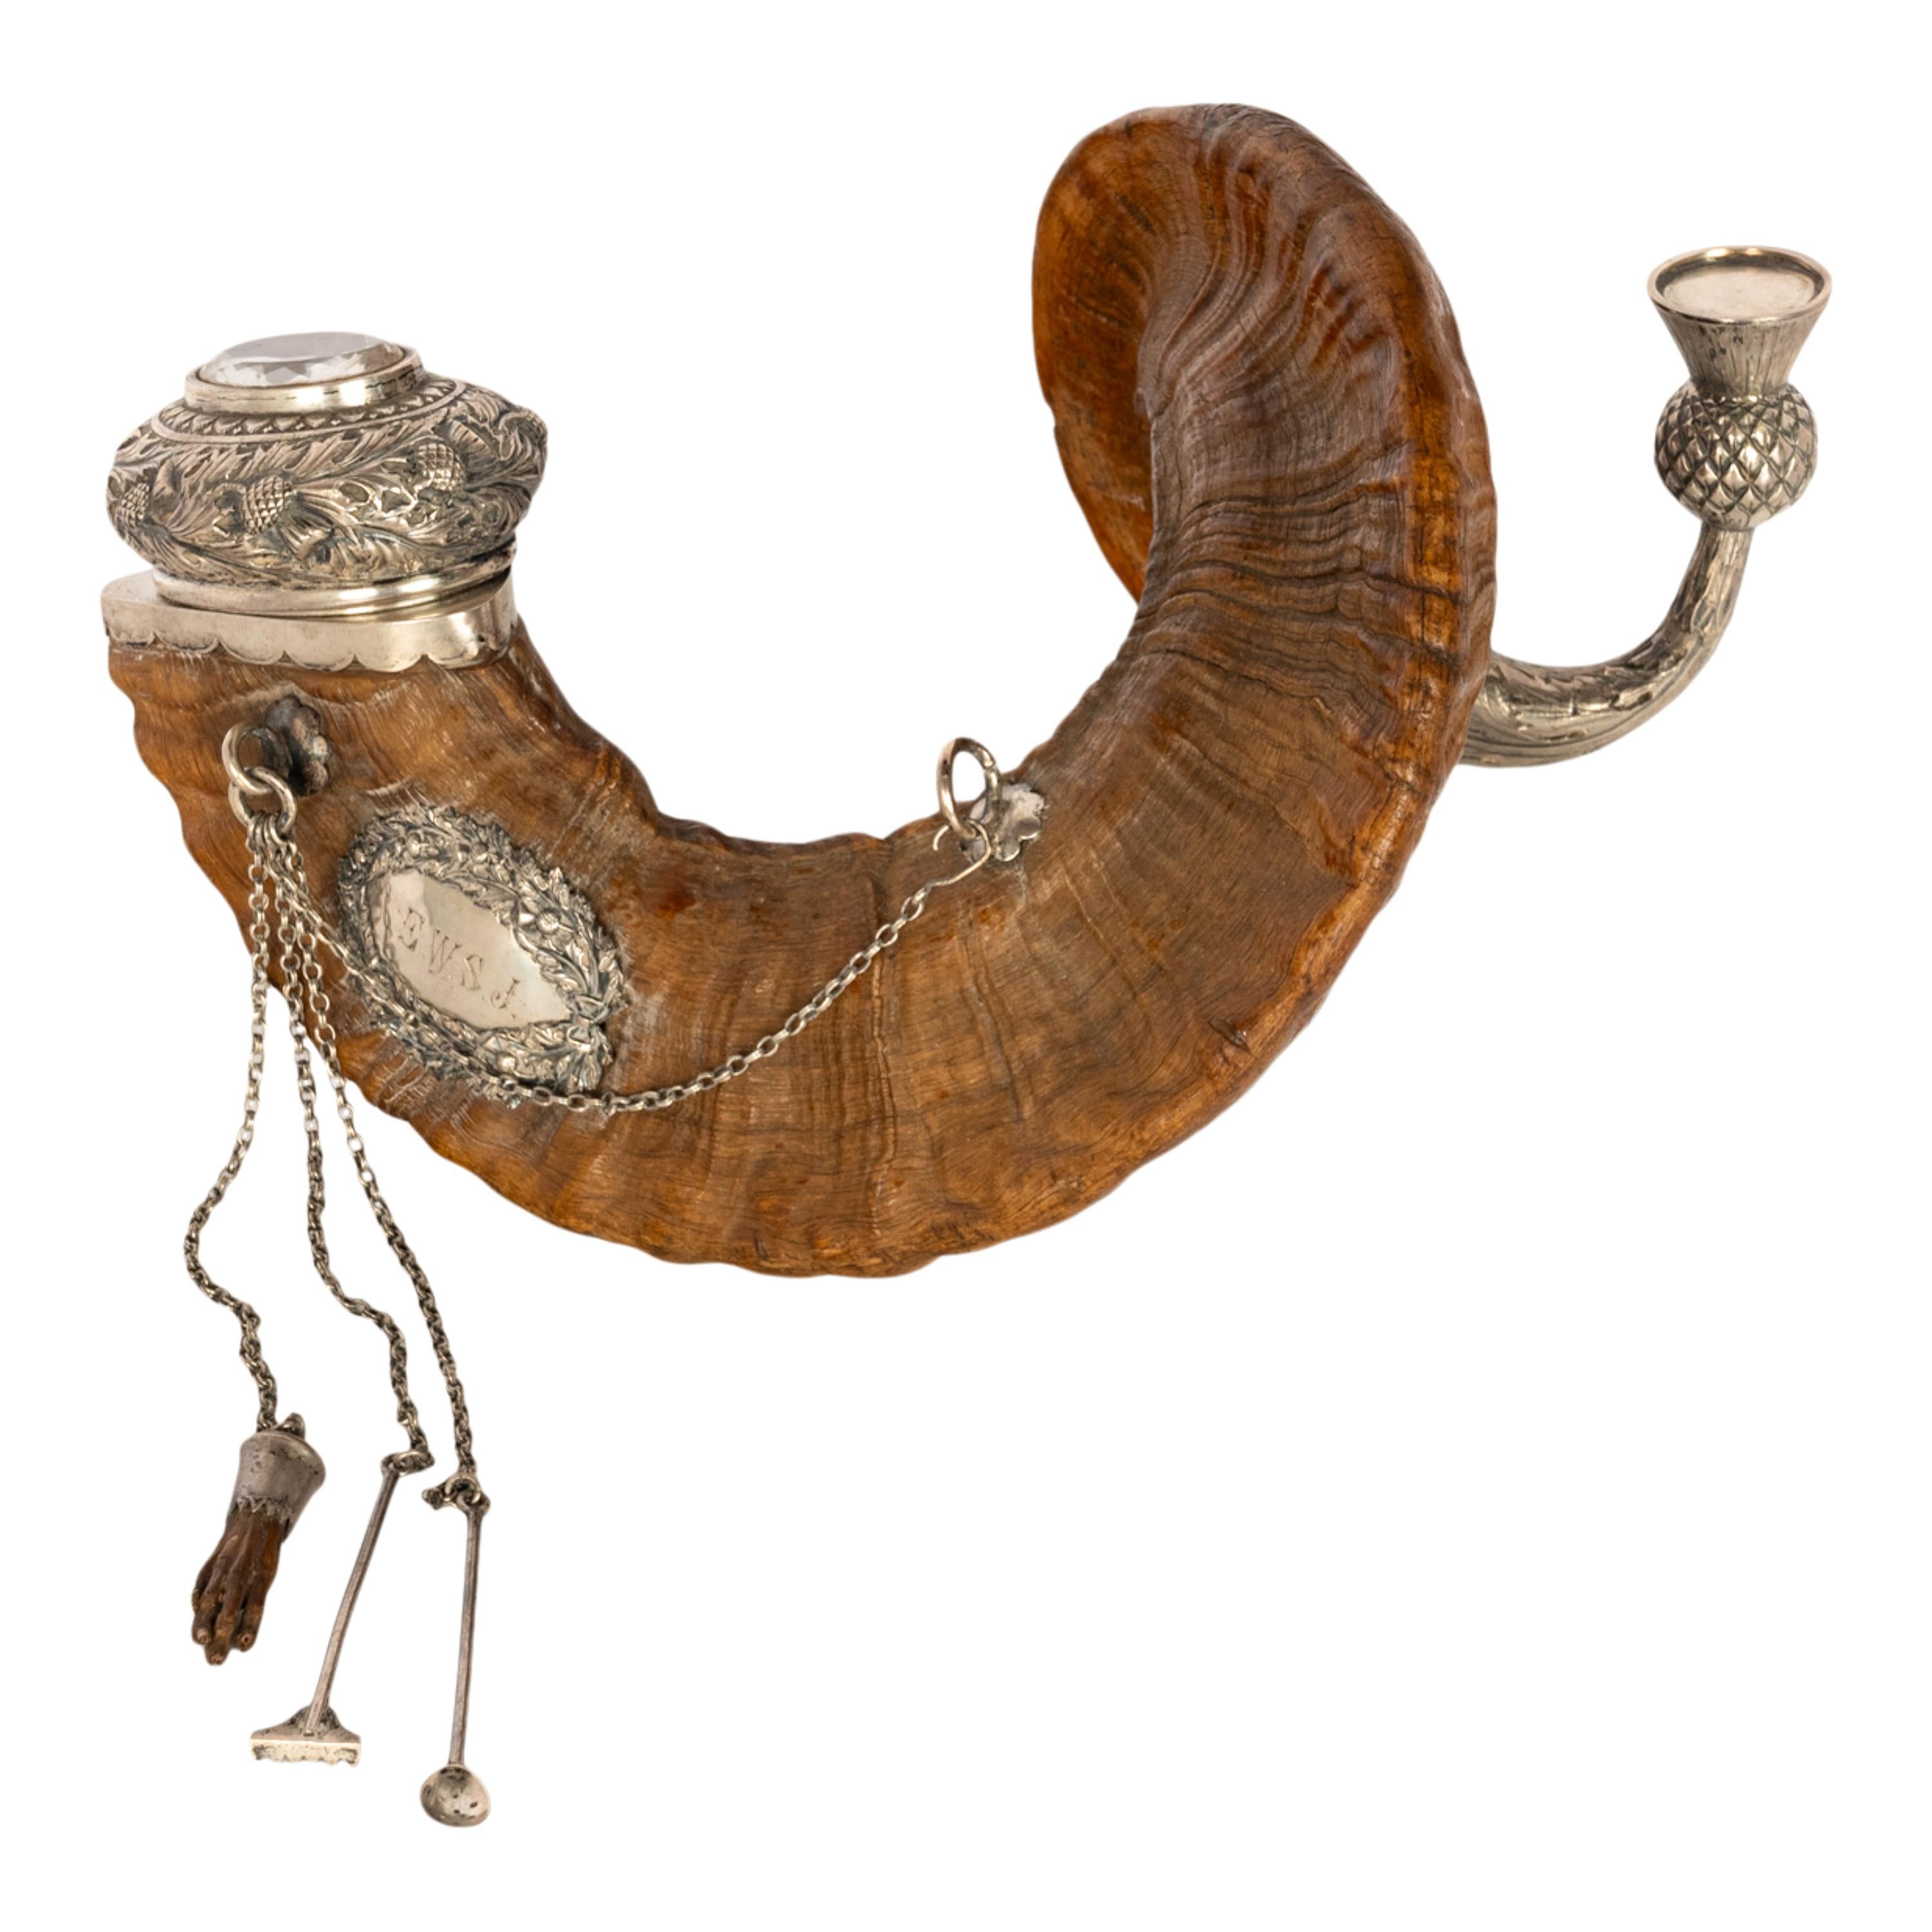 Tabatière écossaise ancienne en argent sterling montée en corne de bélier, sertie d'une grande pierre précieuse cairngorm, Édimbourg 1884, par l'orfèvre Peter MacGregor Westren.
Cette rare tabatière de table écossaise d'apparat possède un couvercle